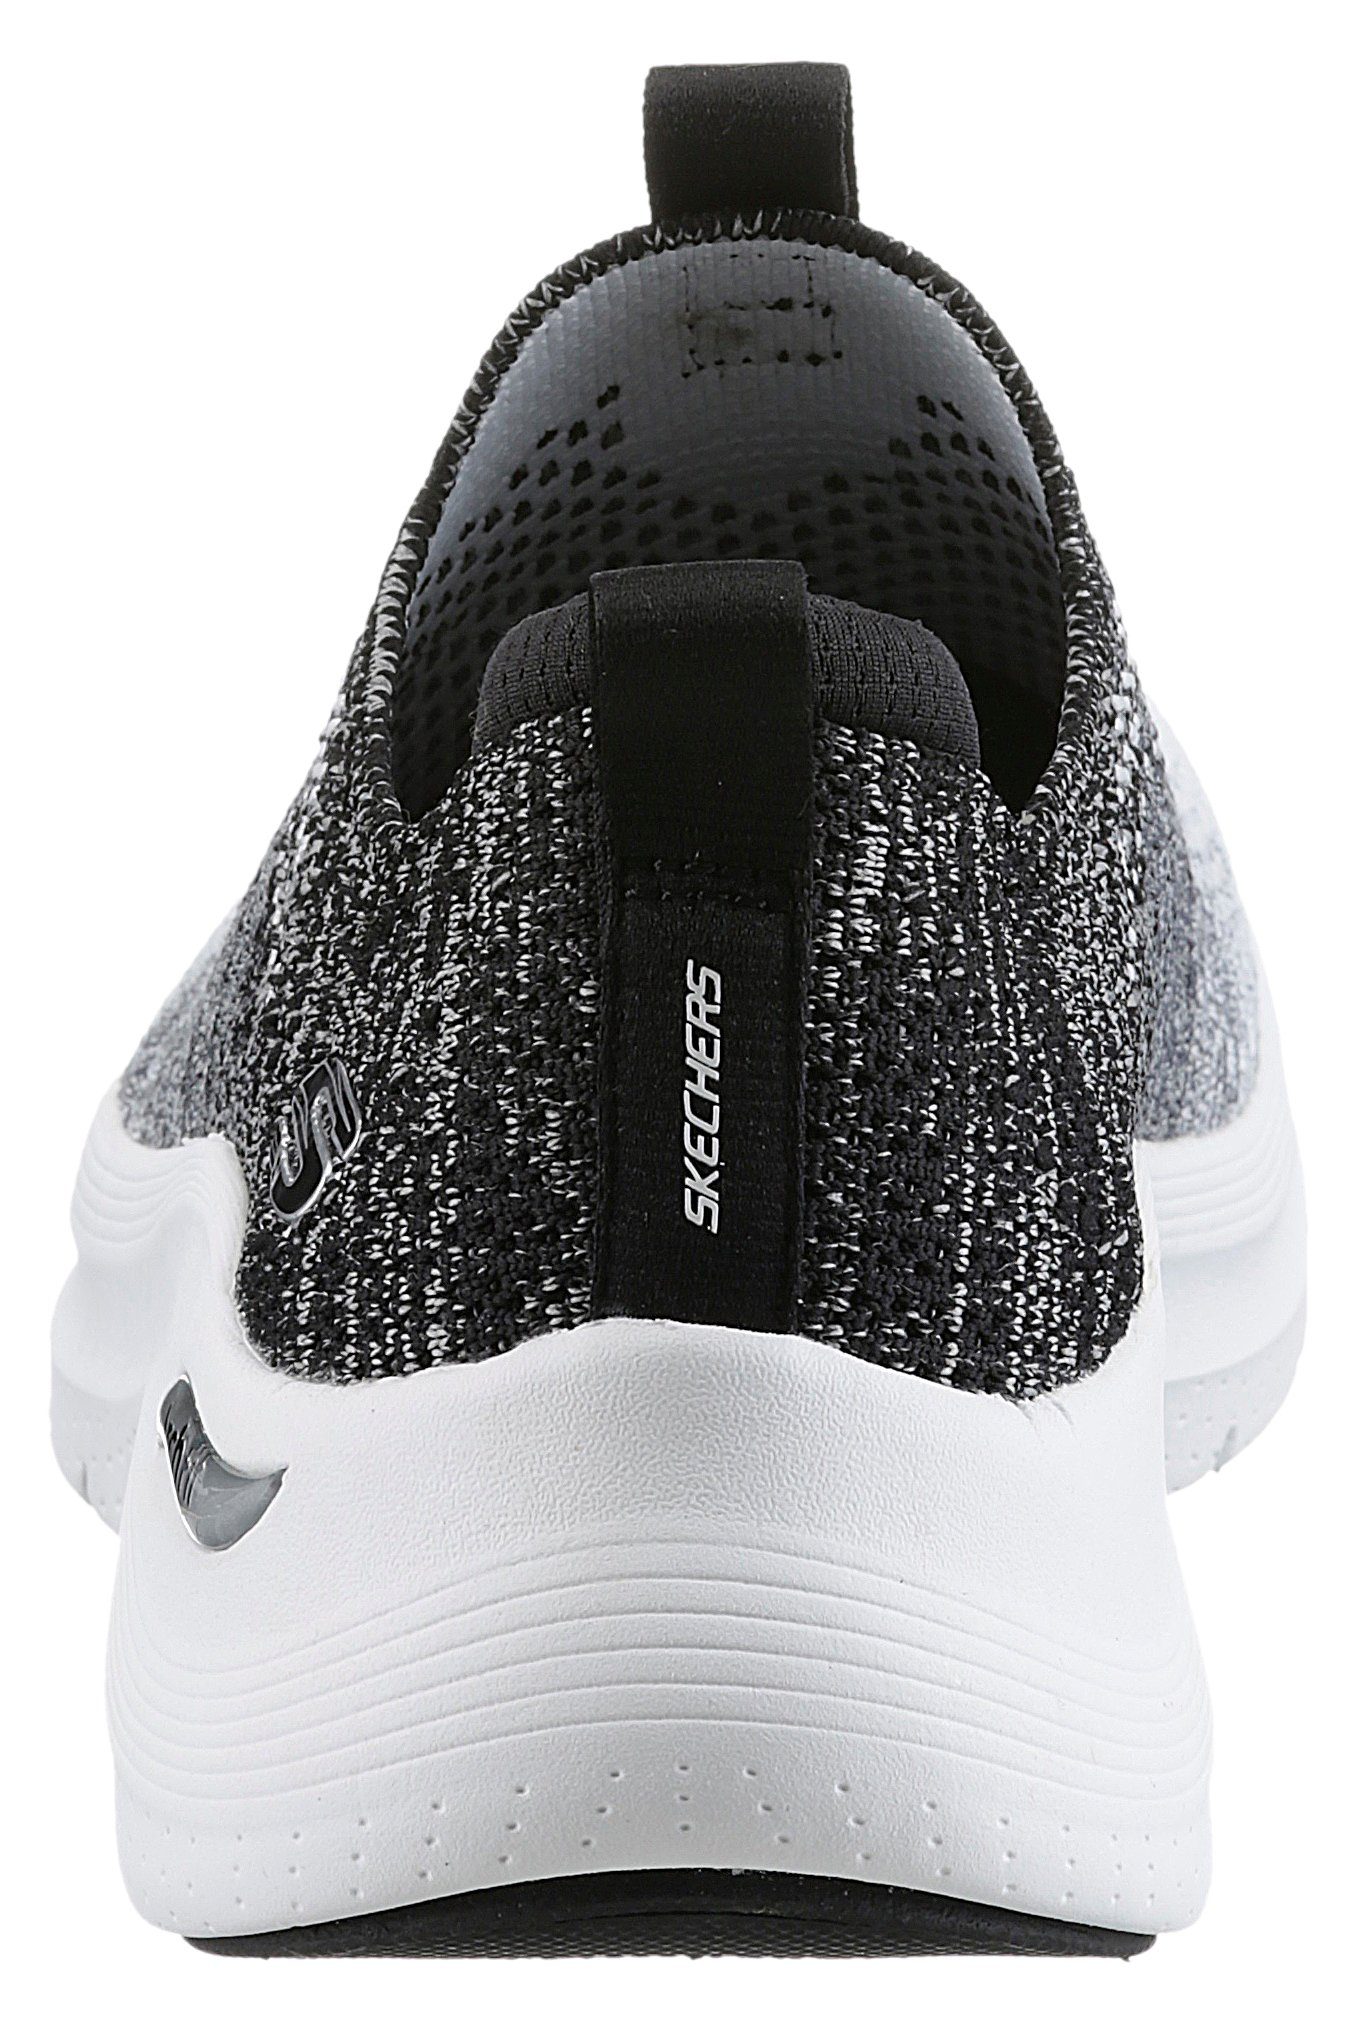 Skechers ARCH FIT 2.0 Sneaker mit weiß-schwarz Slip-On Farbverlauf stylischem